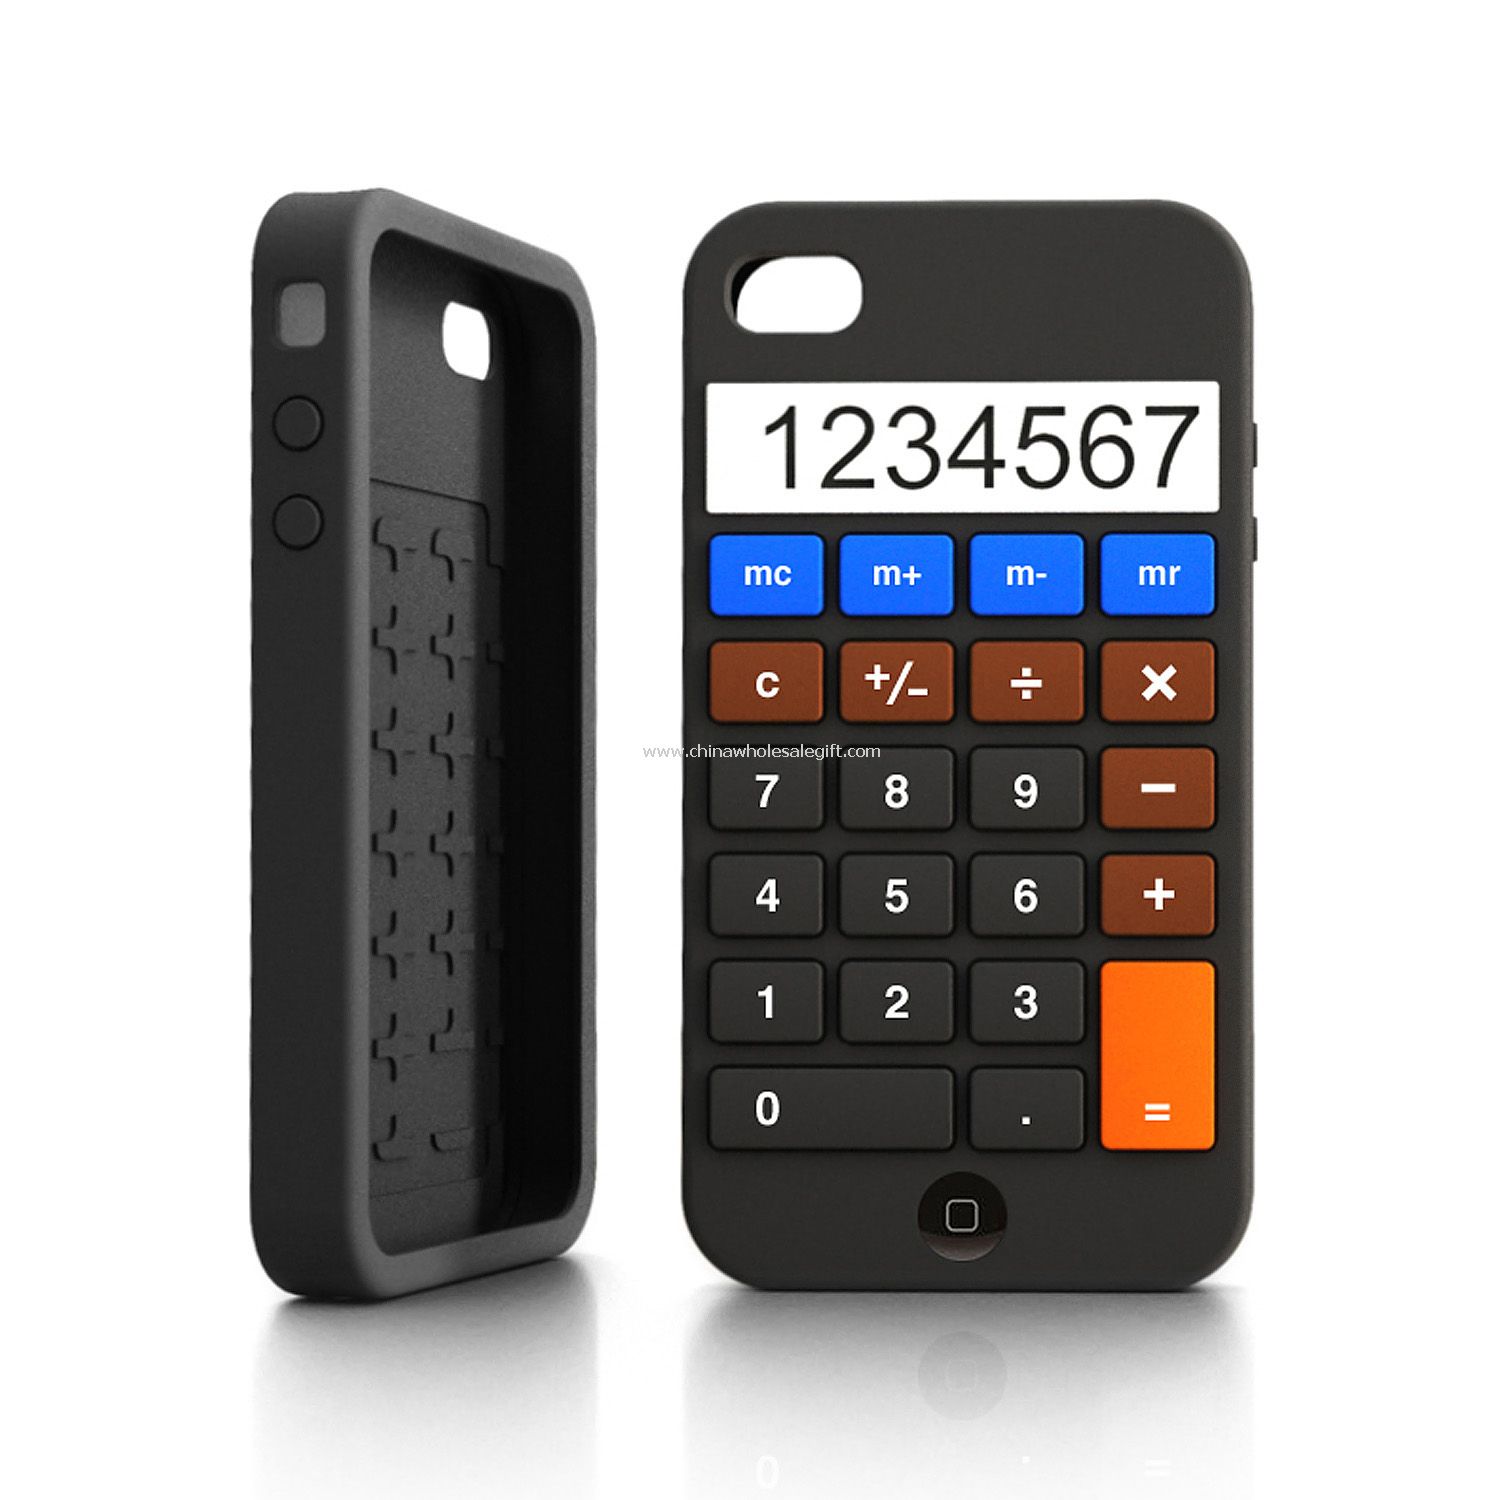 Kalkulačka iPhone 4 případy